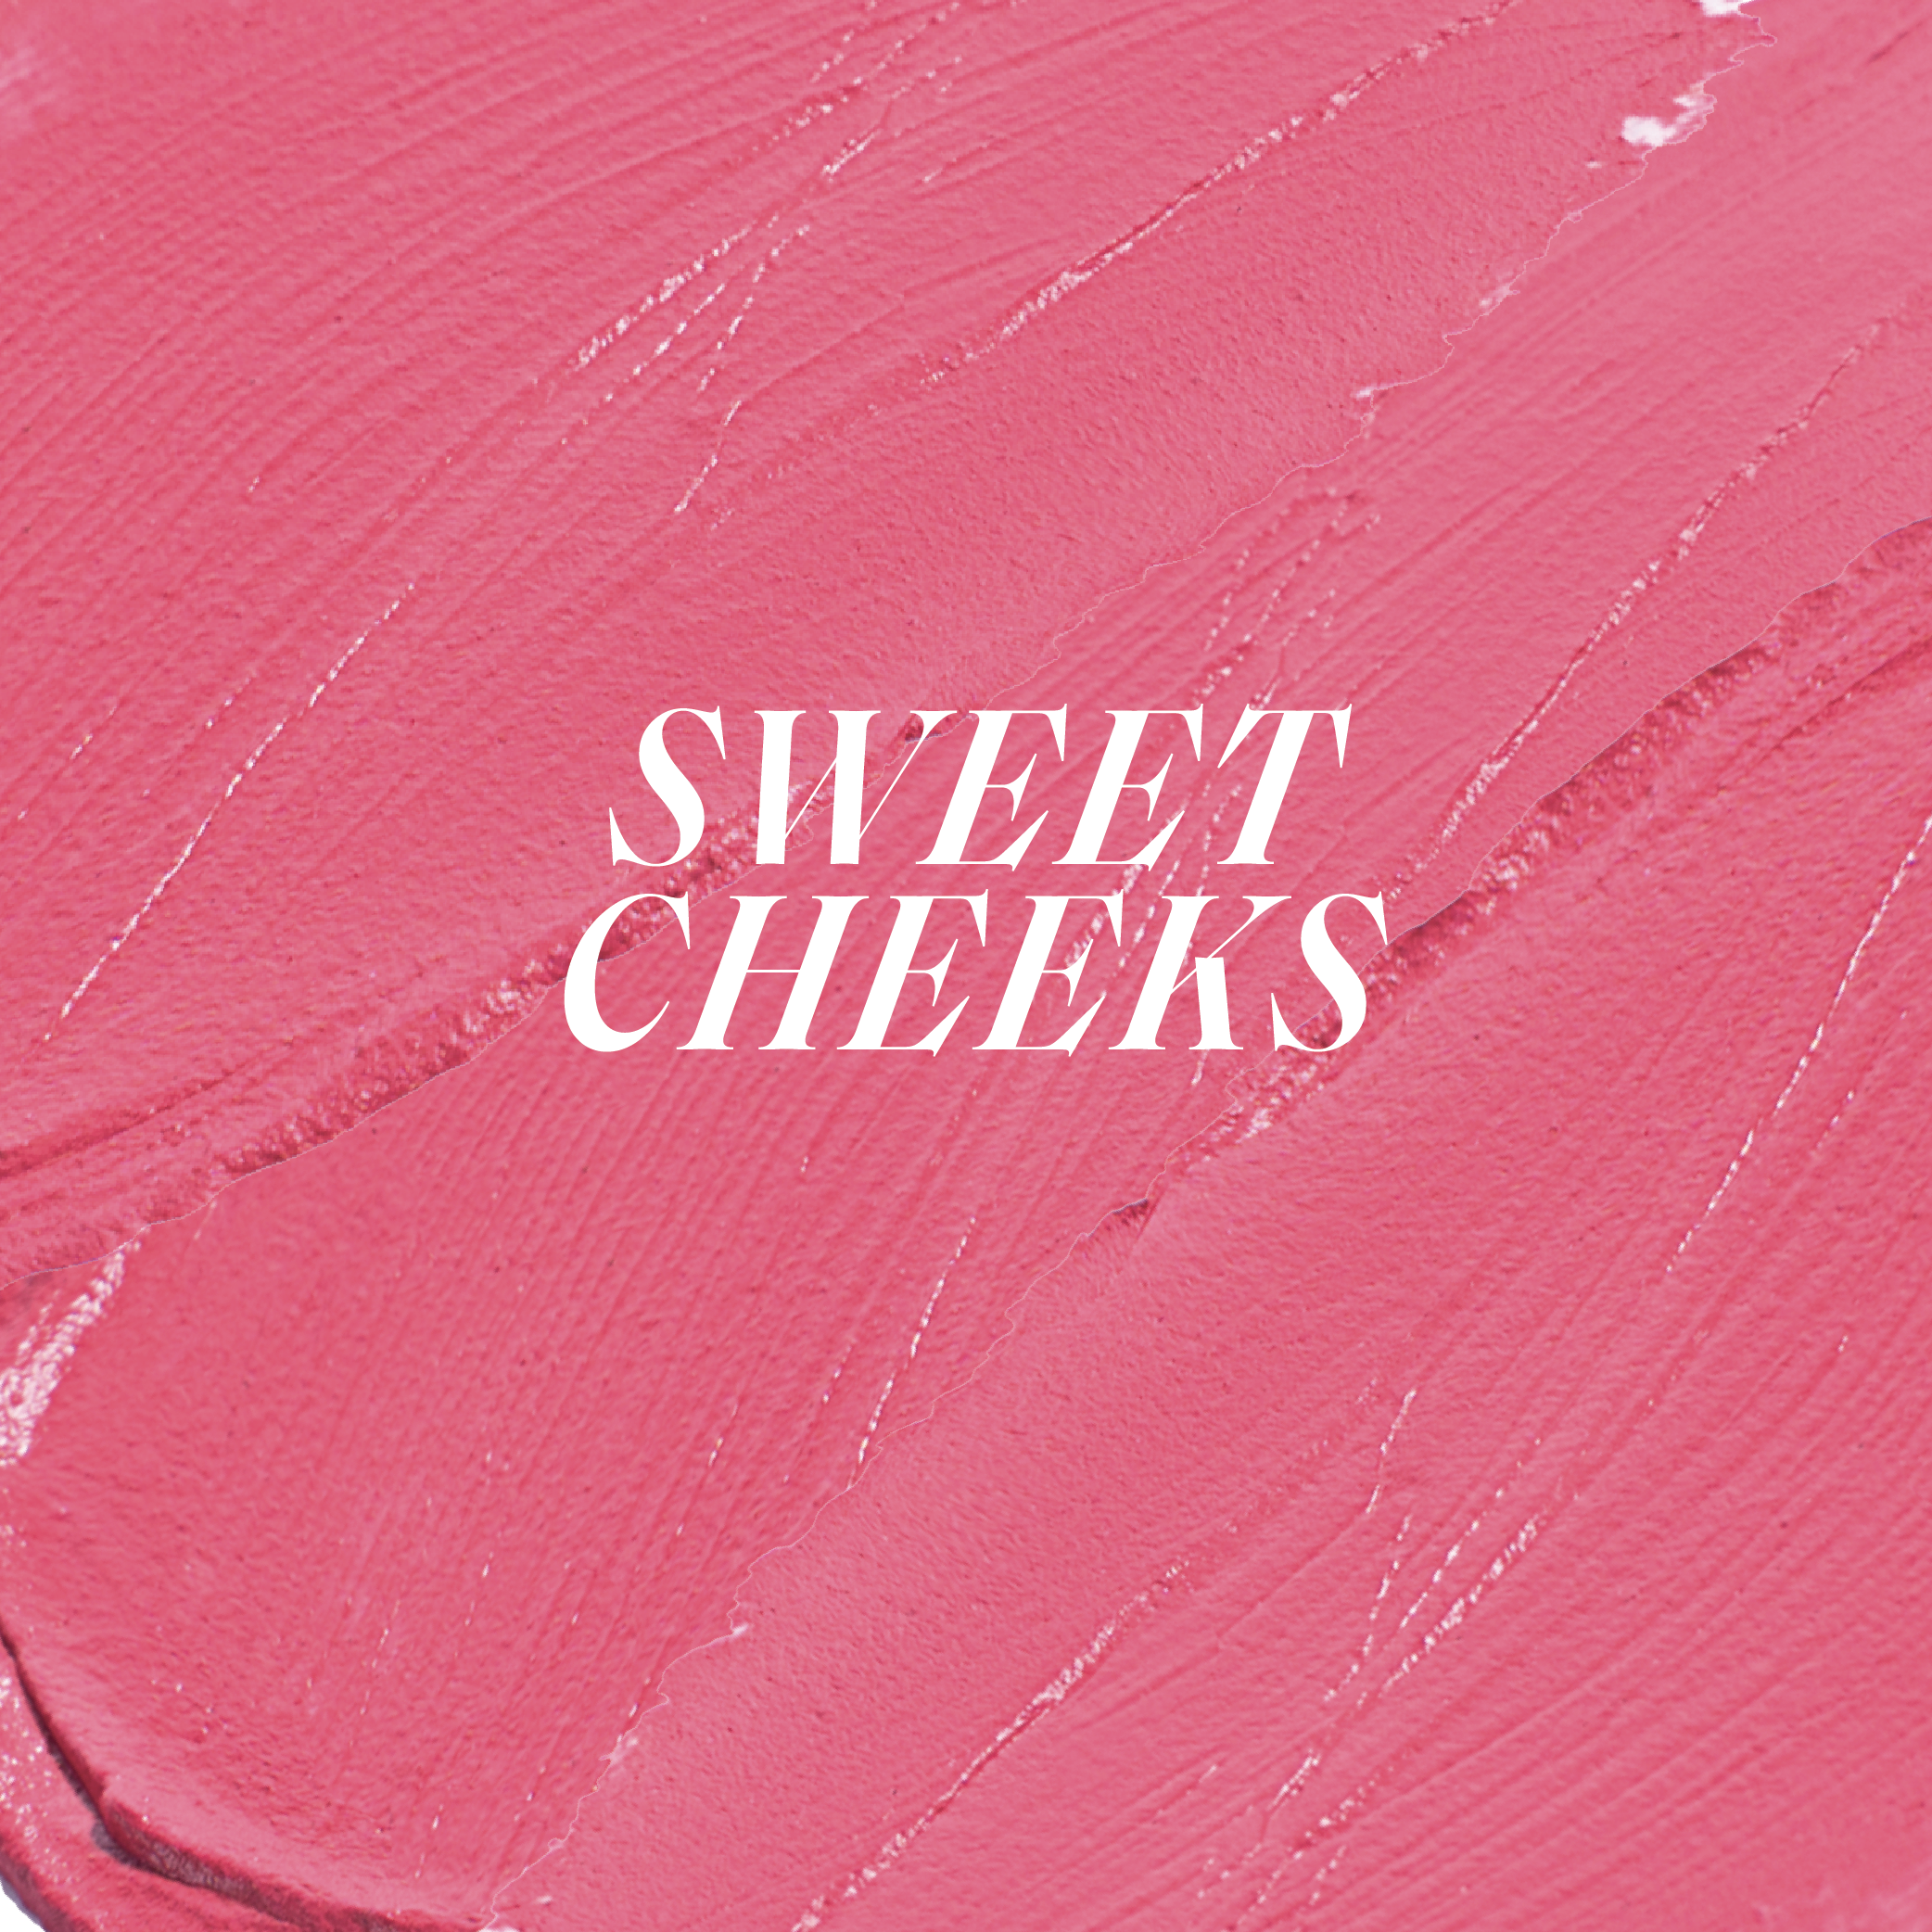 Cheeky Affair Liquid Blush - Sweet Cheeks